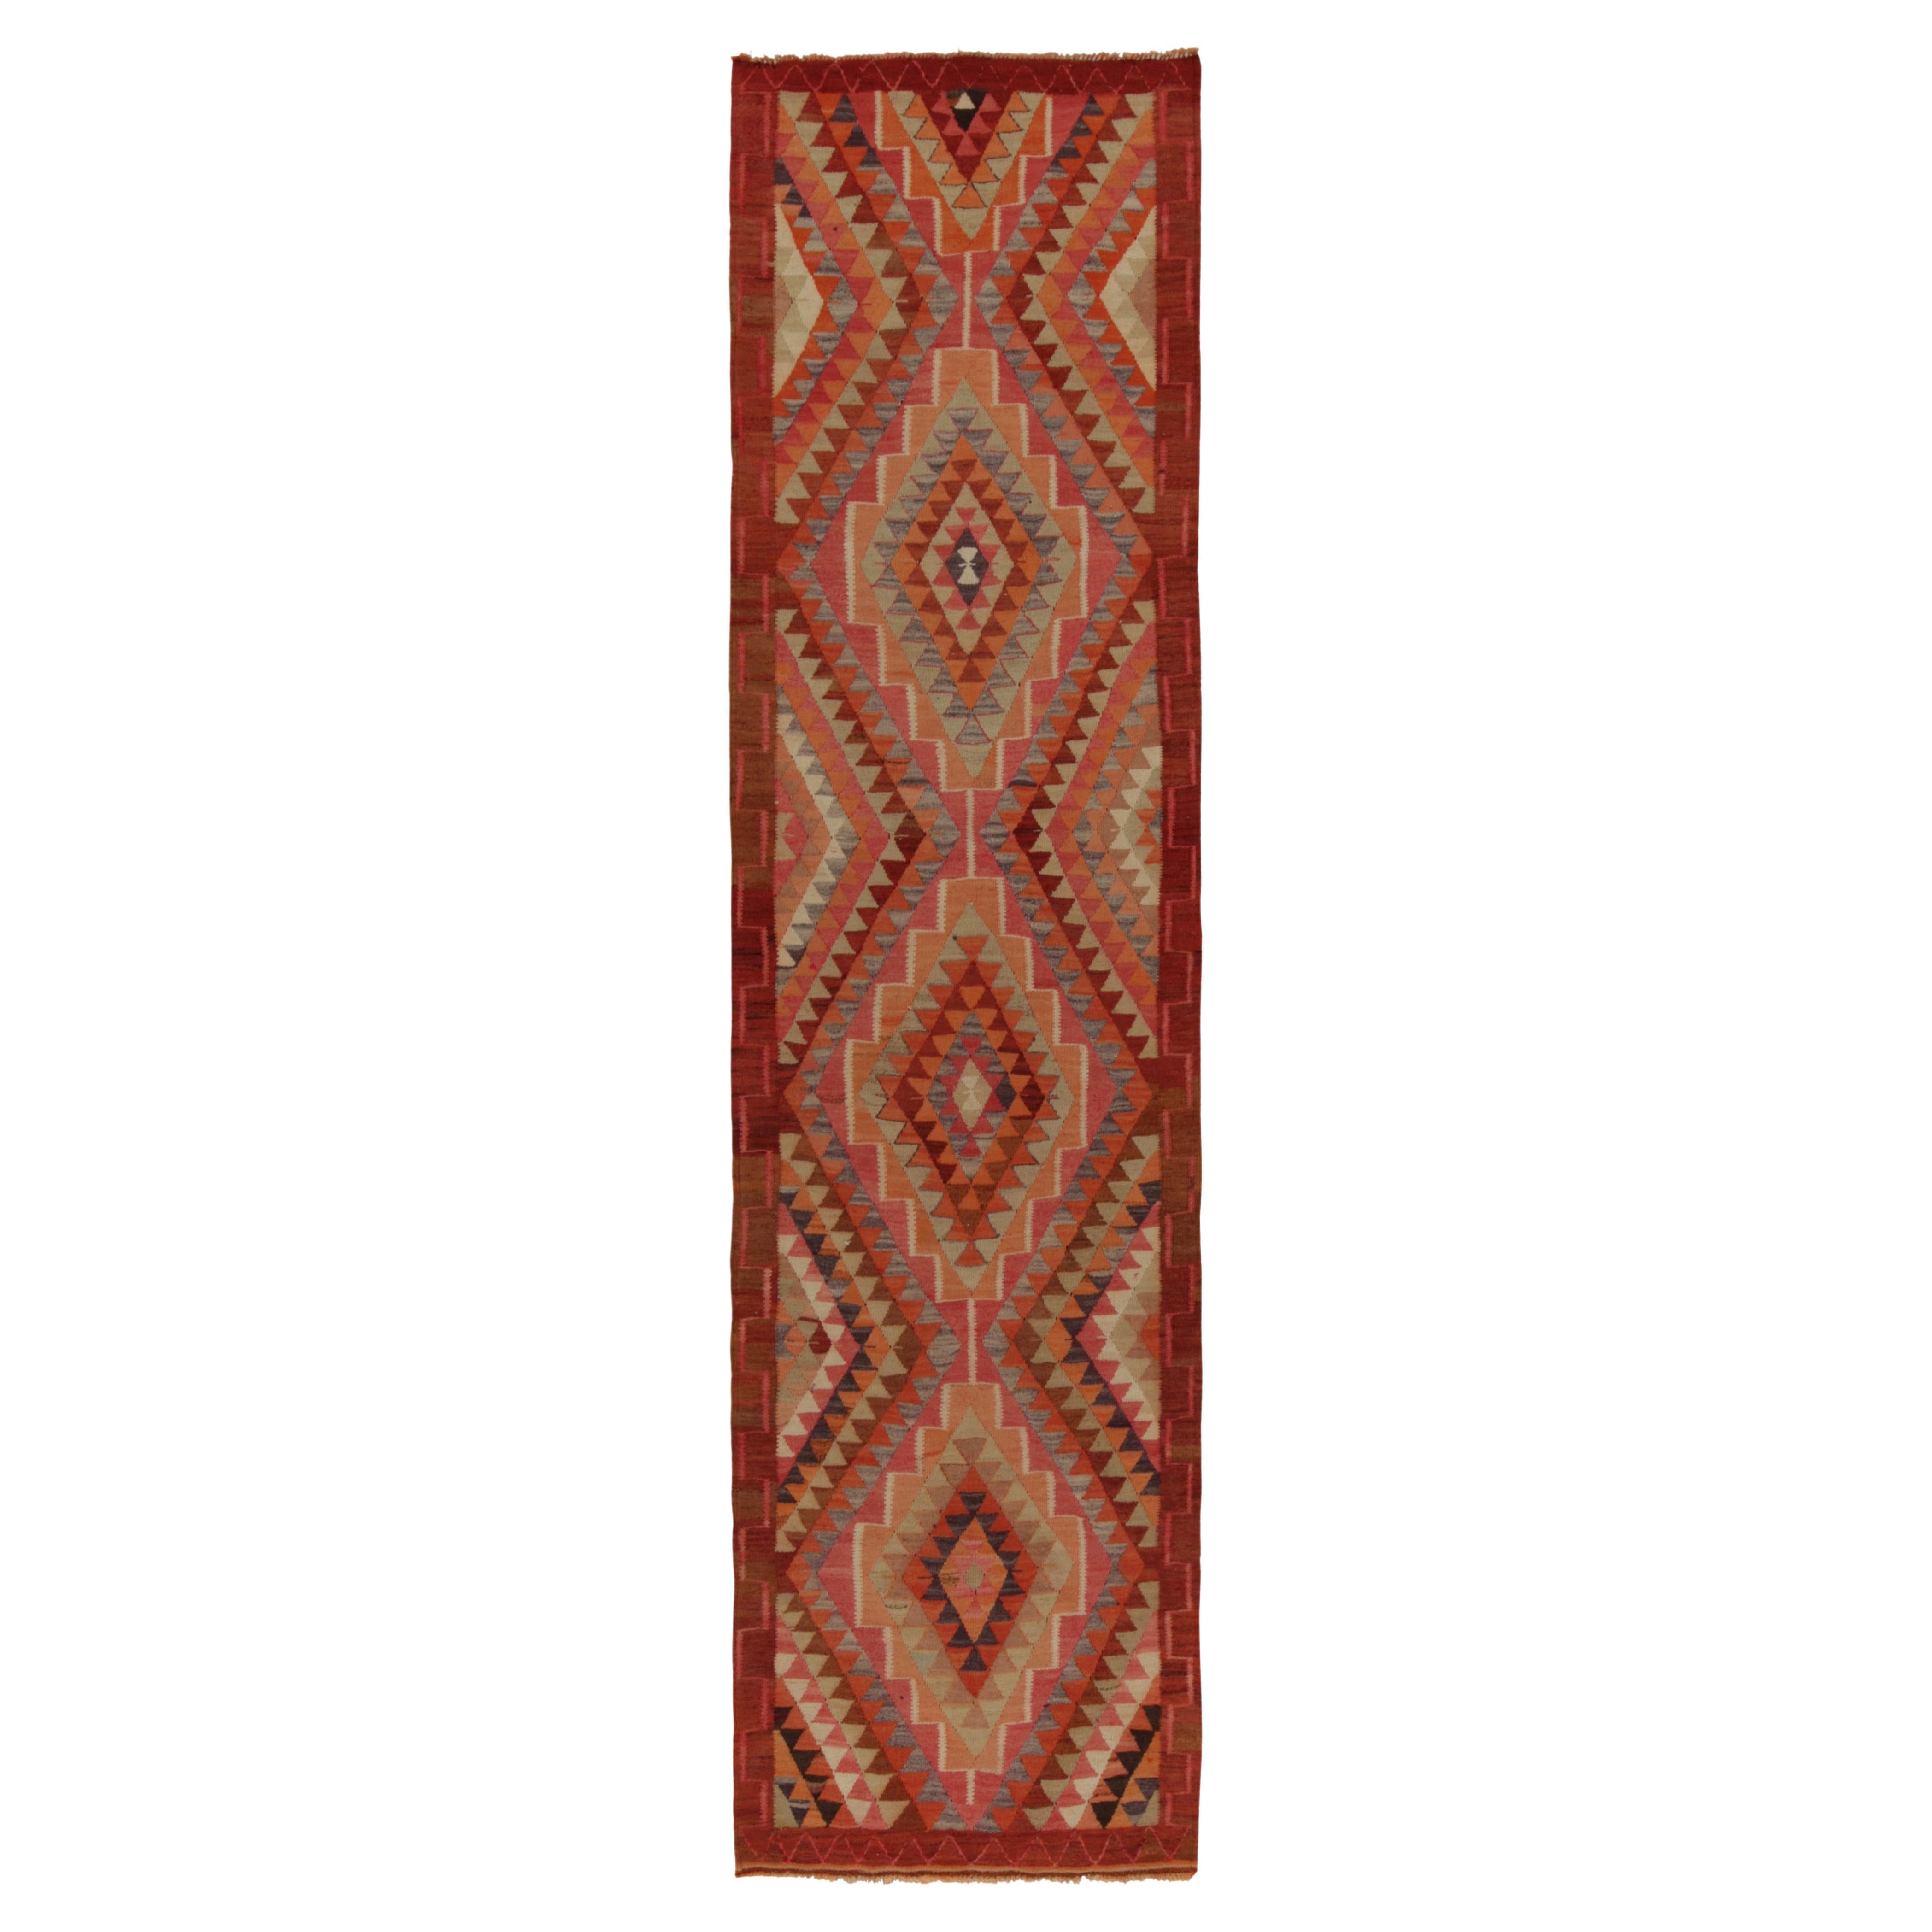 Vintage Tribal Kilim Runner in Red Brown Orange Geometric Pattern by Rug & Kilim For Sale